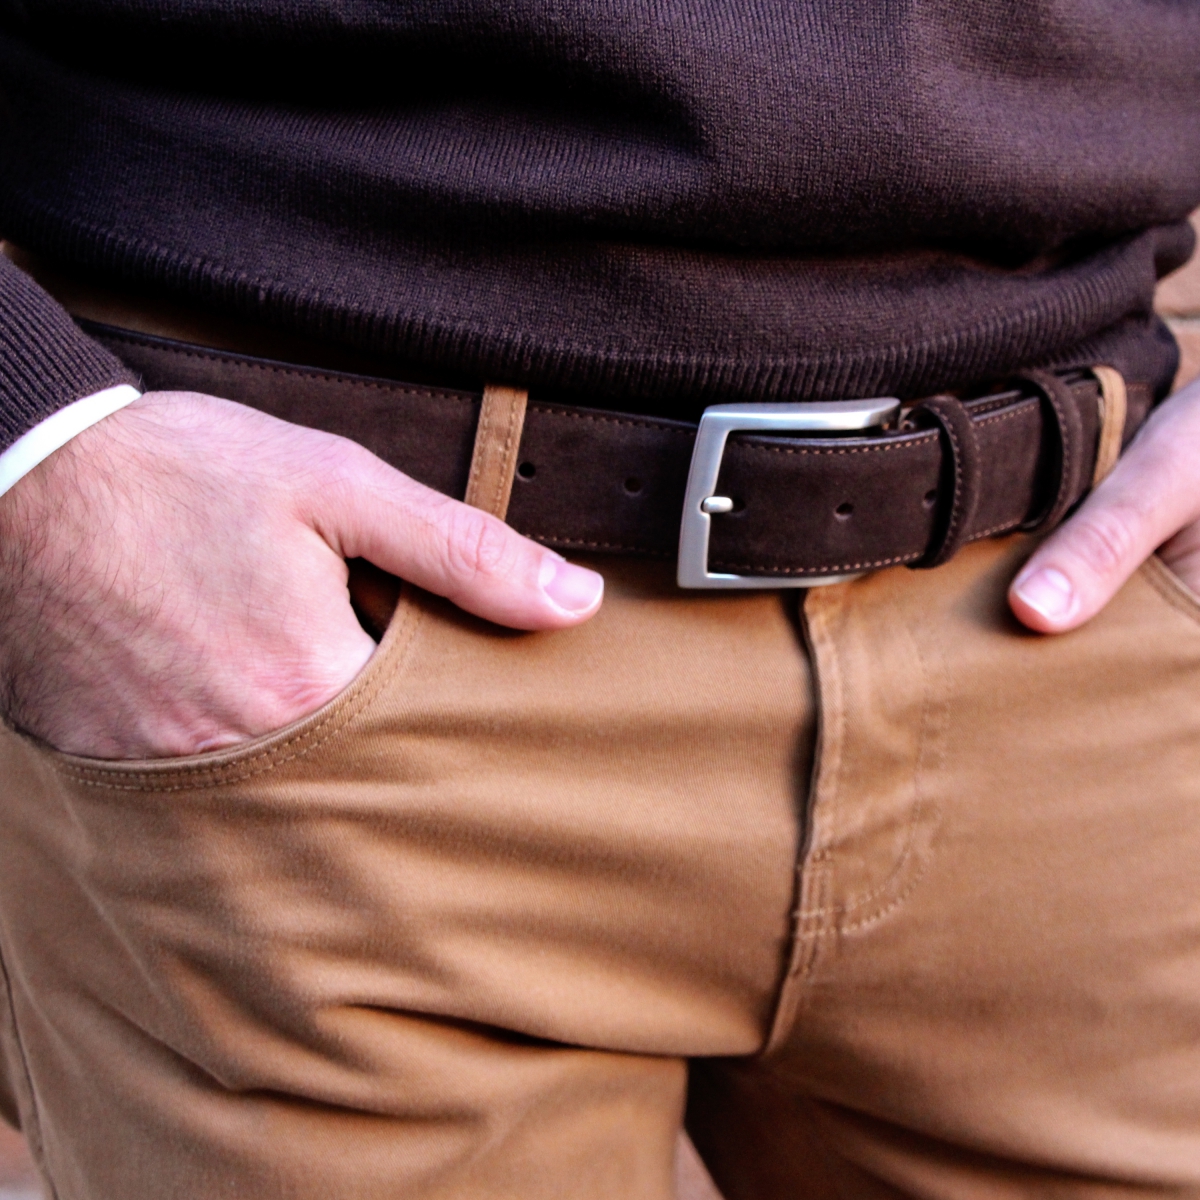 Designer Belts, Men's Leather & Suede Belts